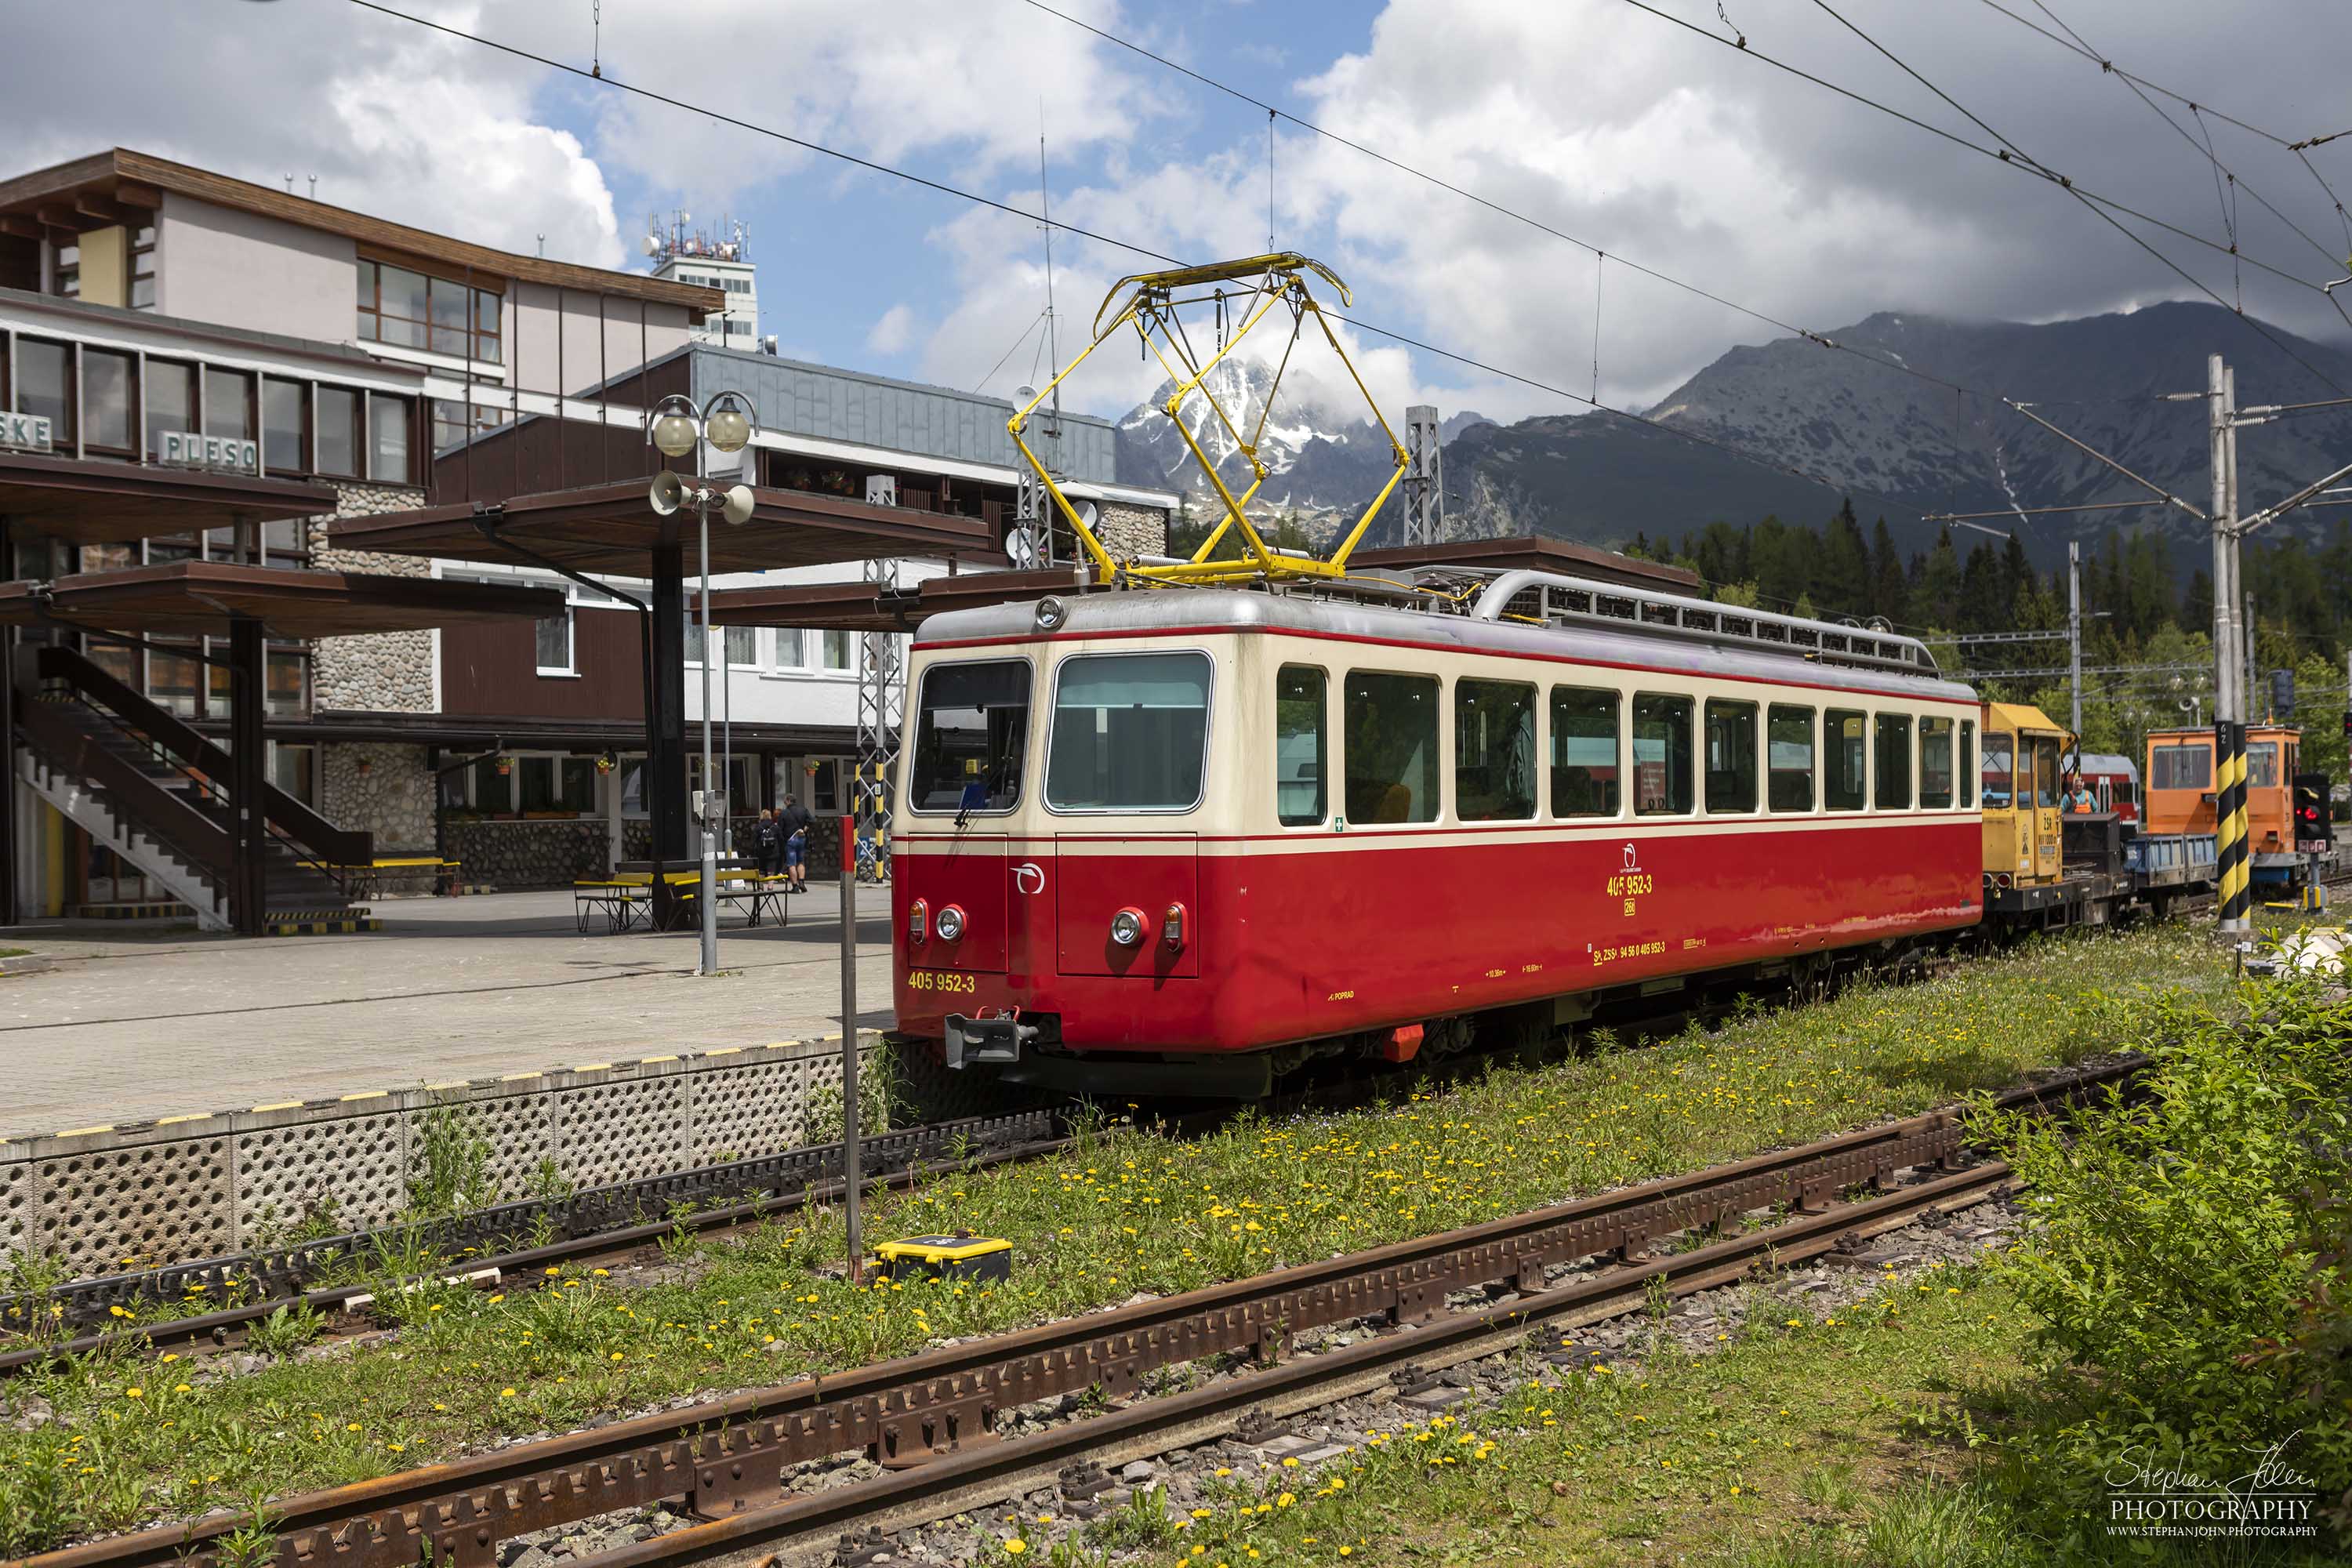 Zahnradbahn von Strba nach Strebske Pleso in der Hohen Tatra im Bahnhof Strebske Pleso.